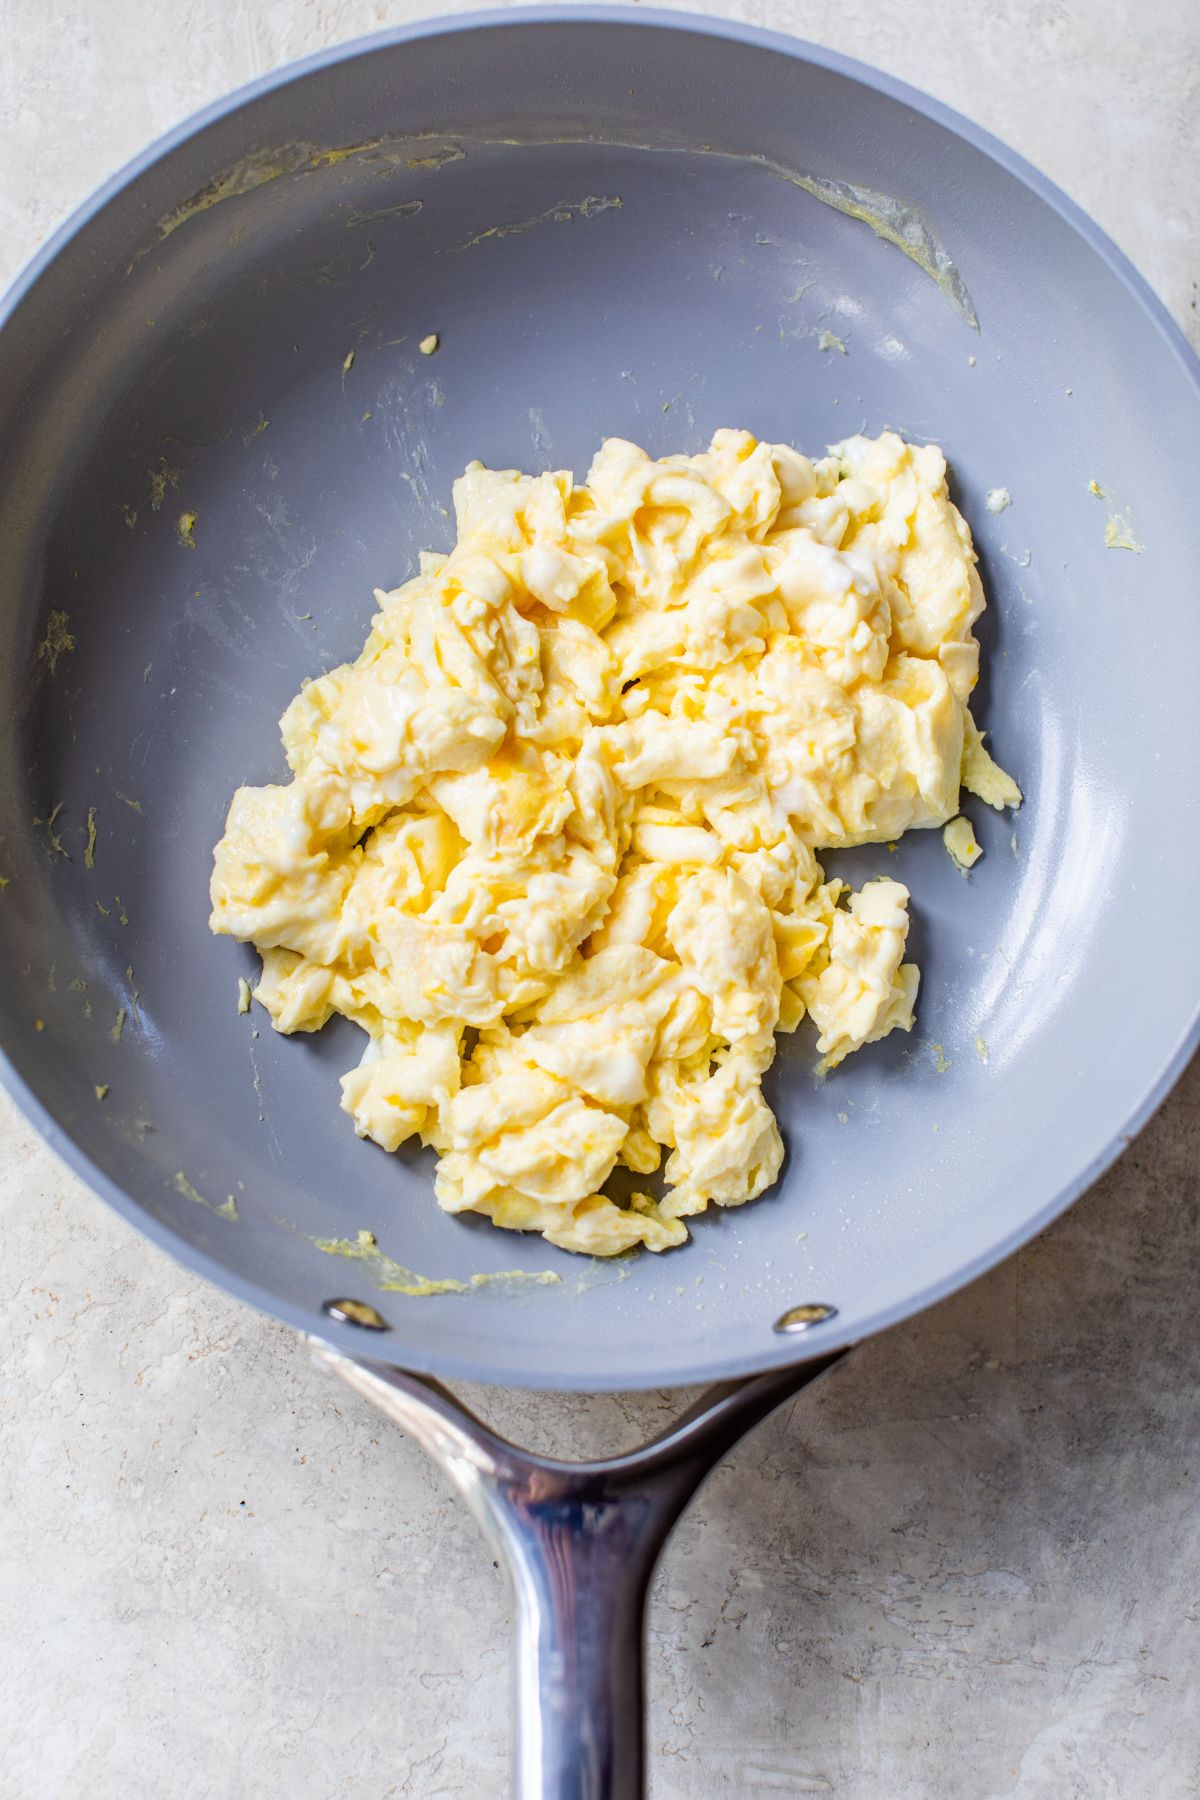 Scrambled eggs in a pan.